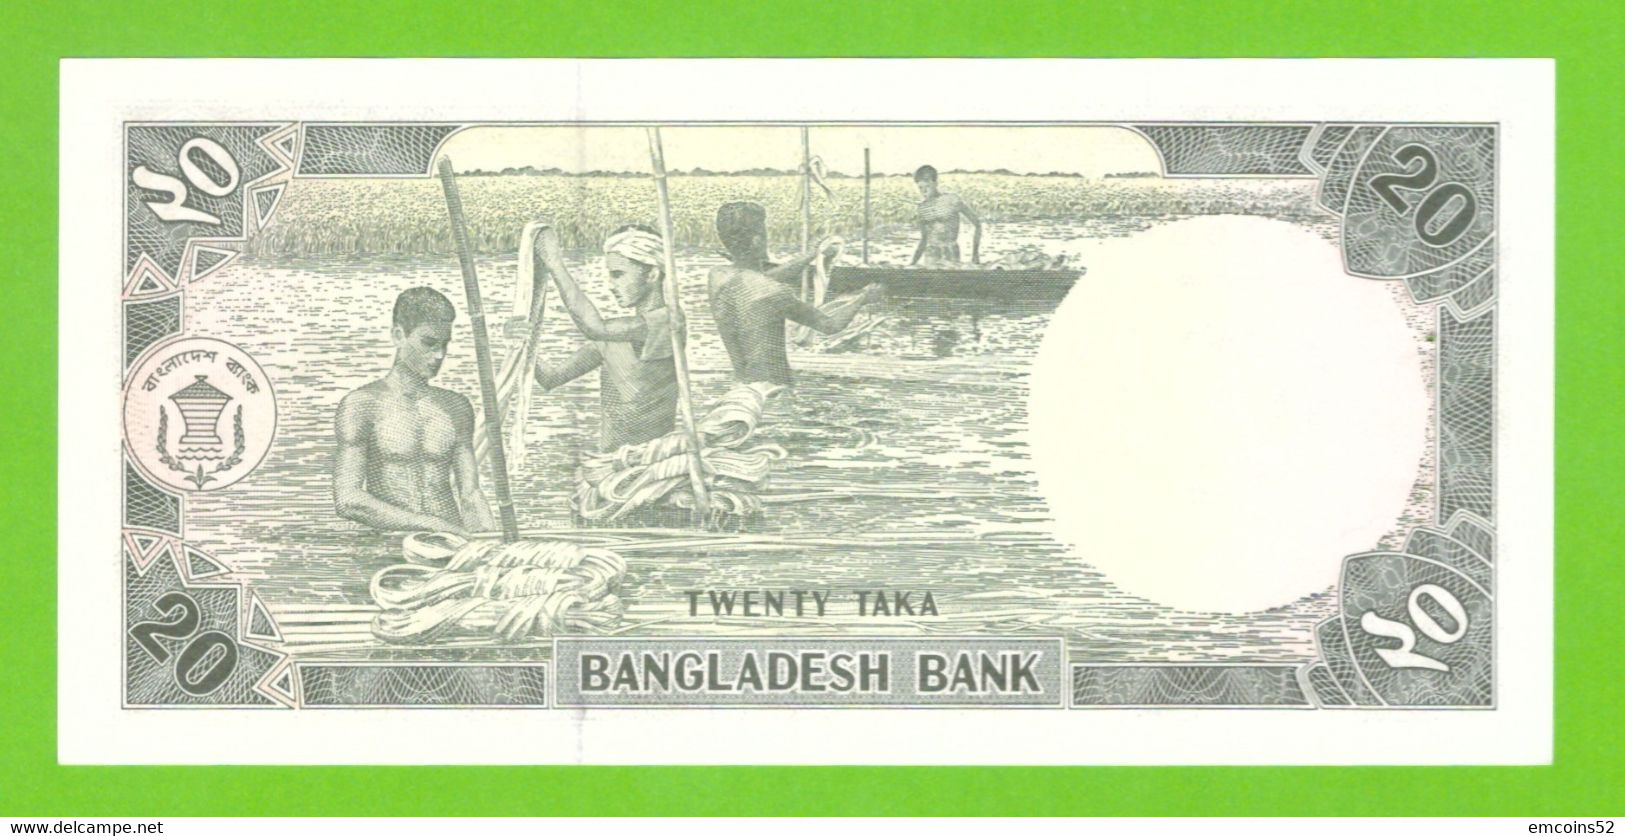 BANGLADESH 20 TAKA 1979  P-22 UNC PIN HOLES - Bangladesh